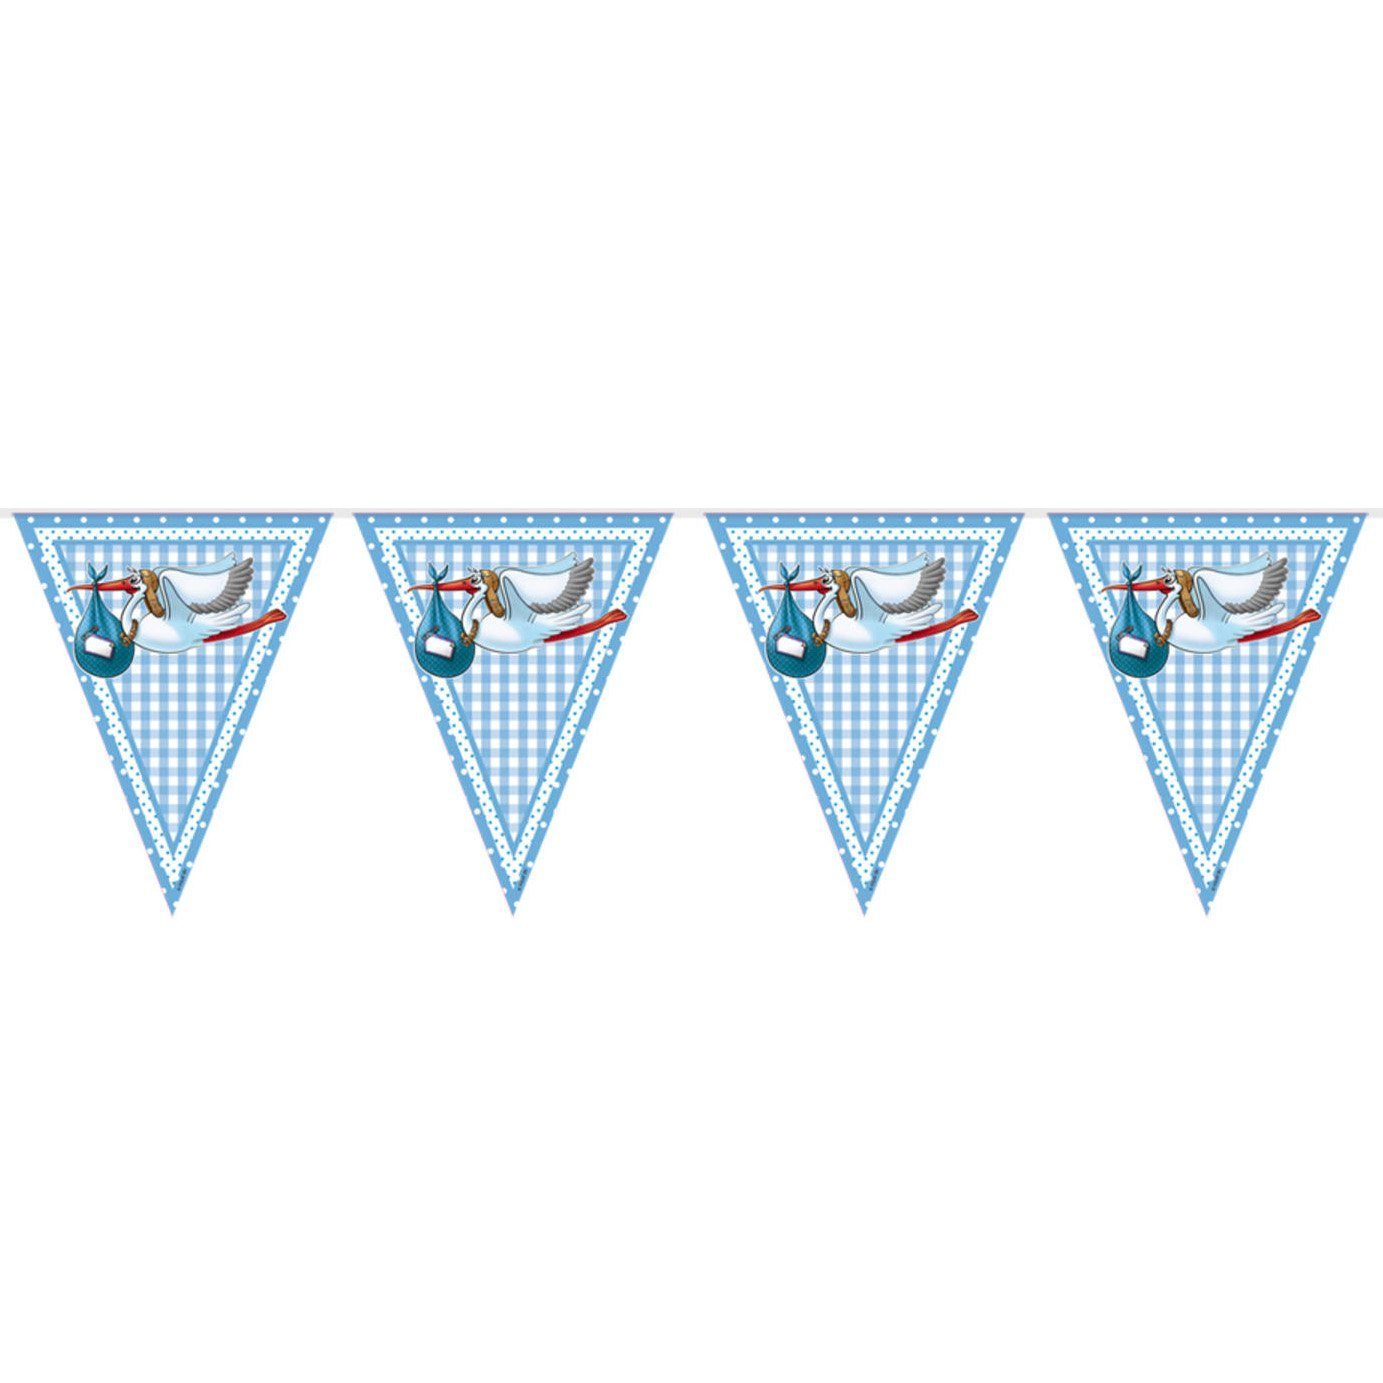 Folat Hängedekoration Storch Baby Wimpelkette blau 10 m, Partydeko für Baby Shower oder Taufparty